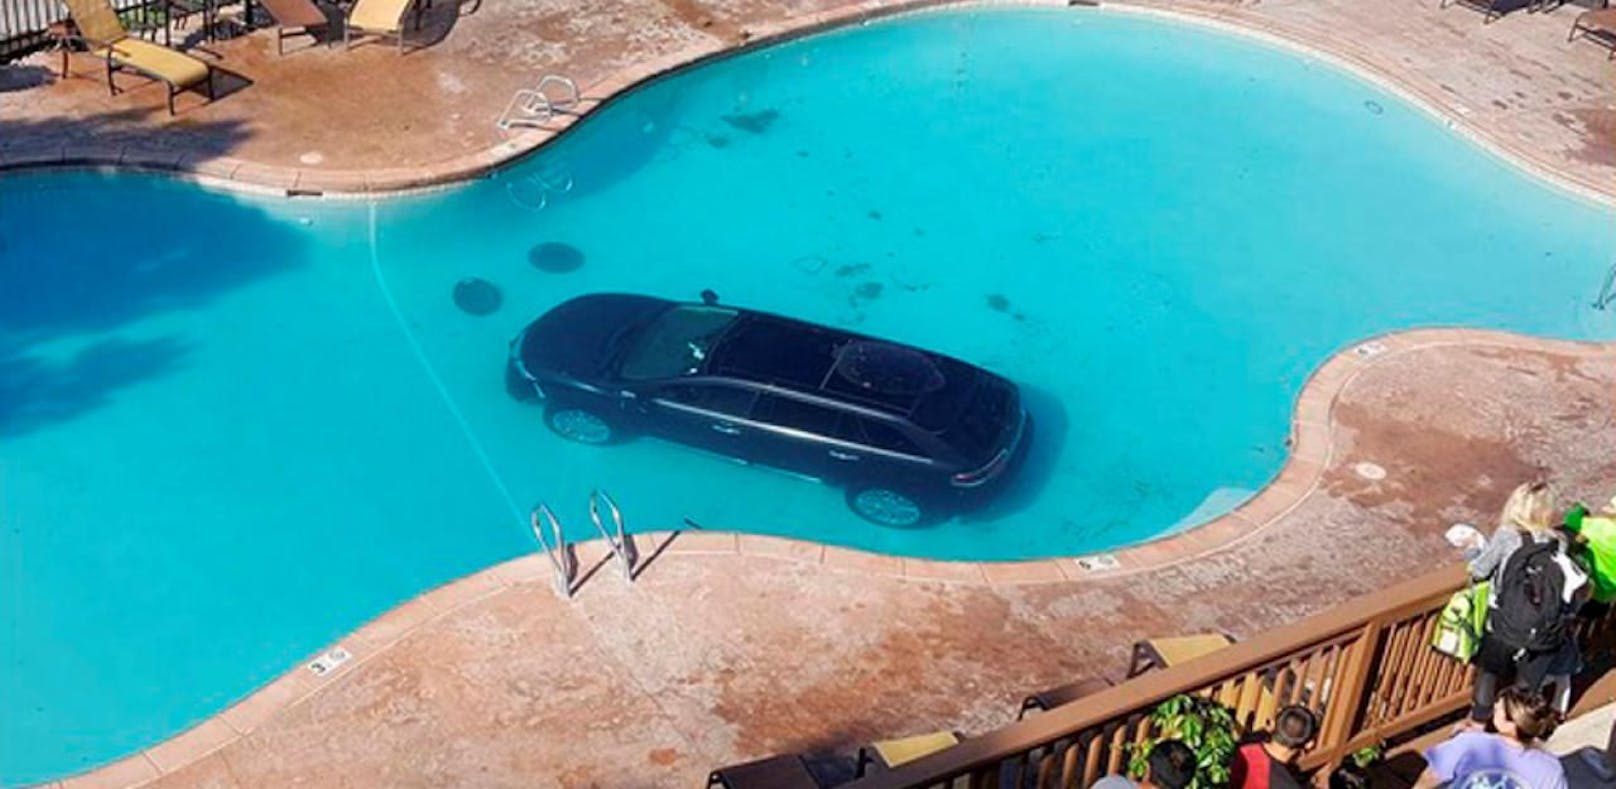 Pedale verwechselt: Frau versenkt Fahrzeug in Pool